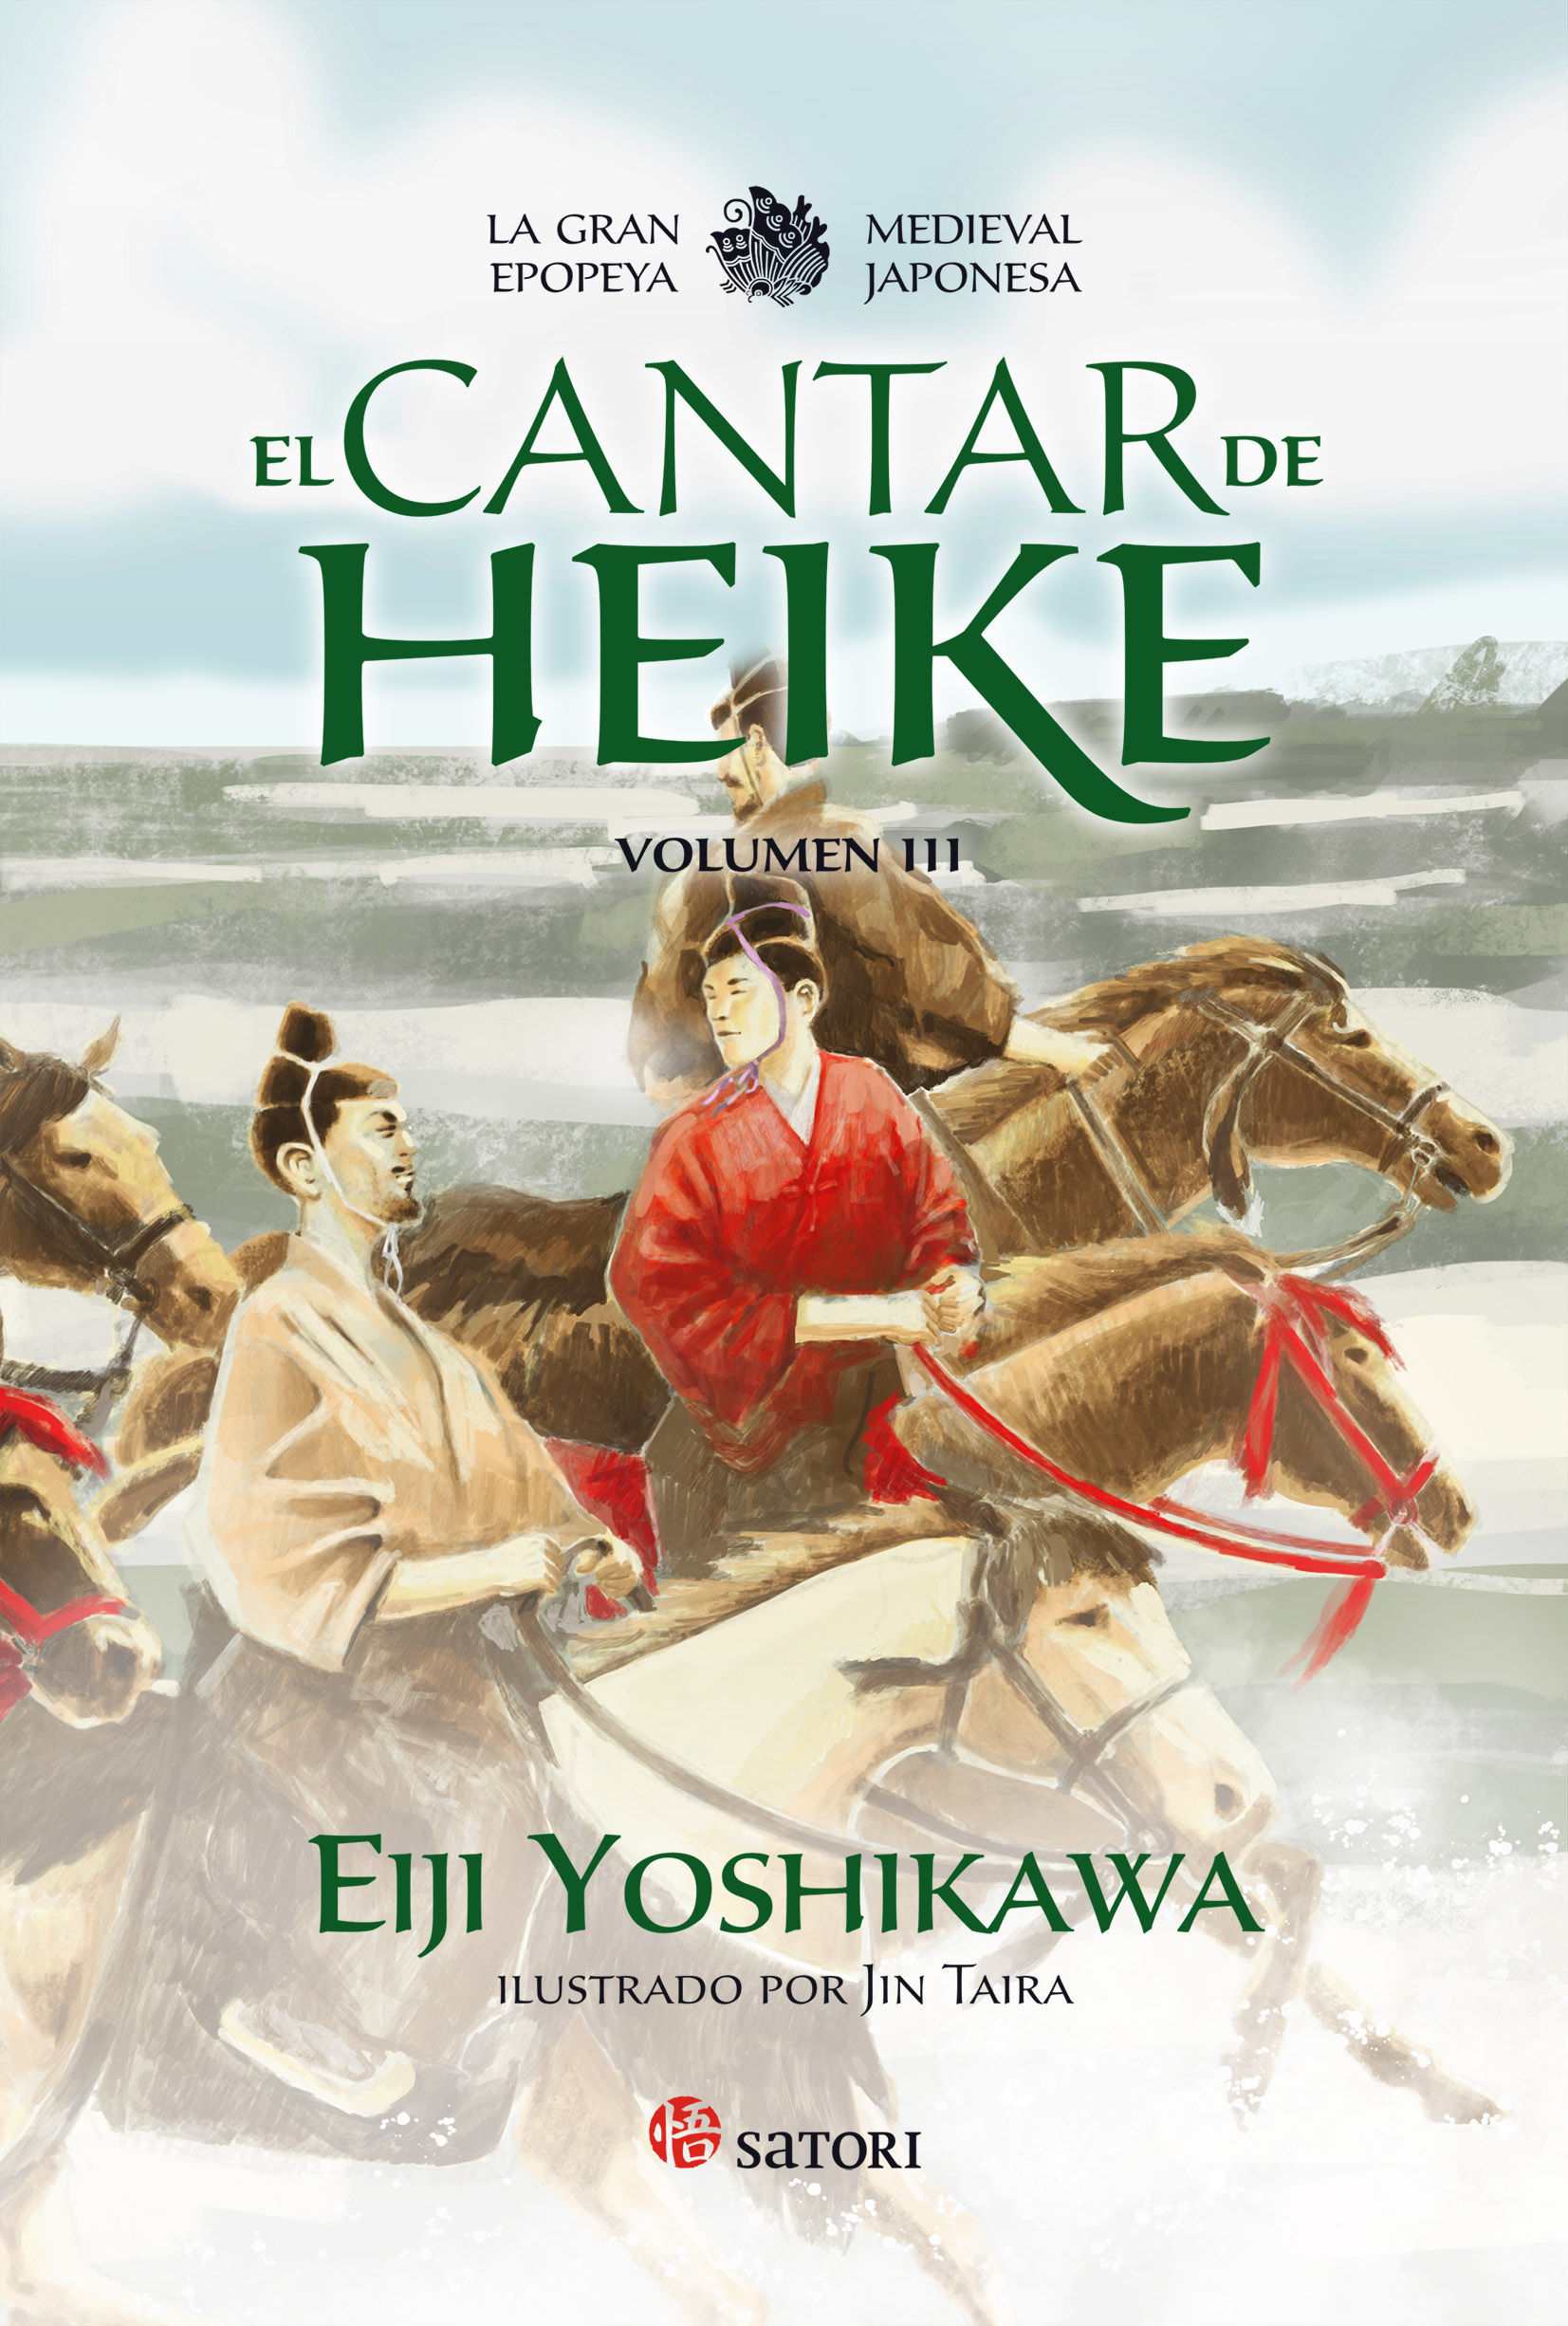 EL CANTAR DE HEIKE 3. LA GRAN EPOPEYA MEDIEVAL JAPONESA